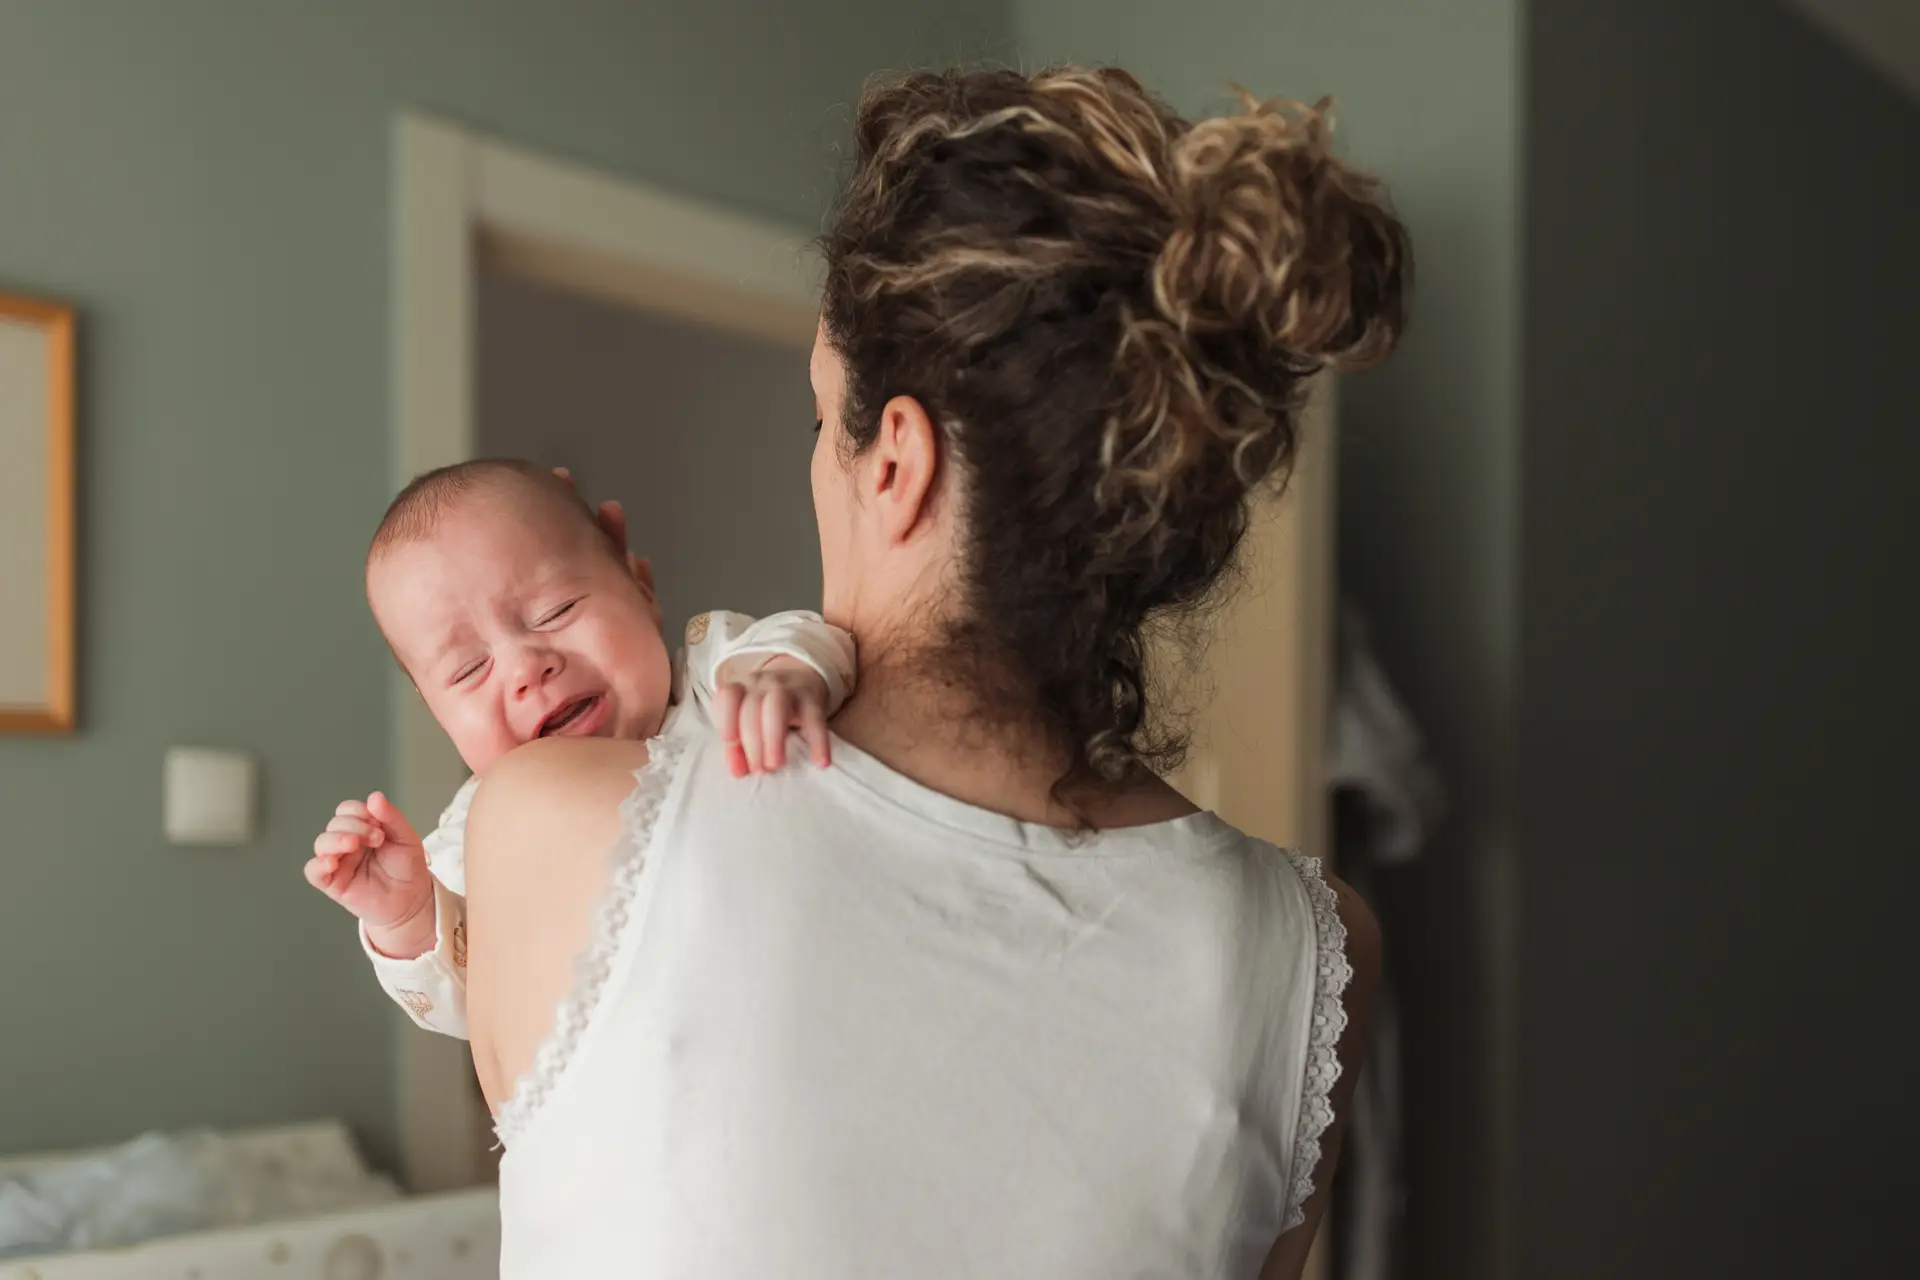 Cientistas revelam o truque para acalmar um bebé que chora sem motivo aparente